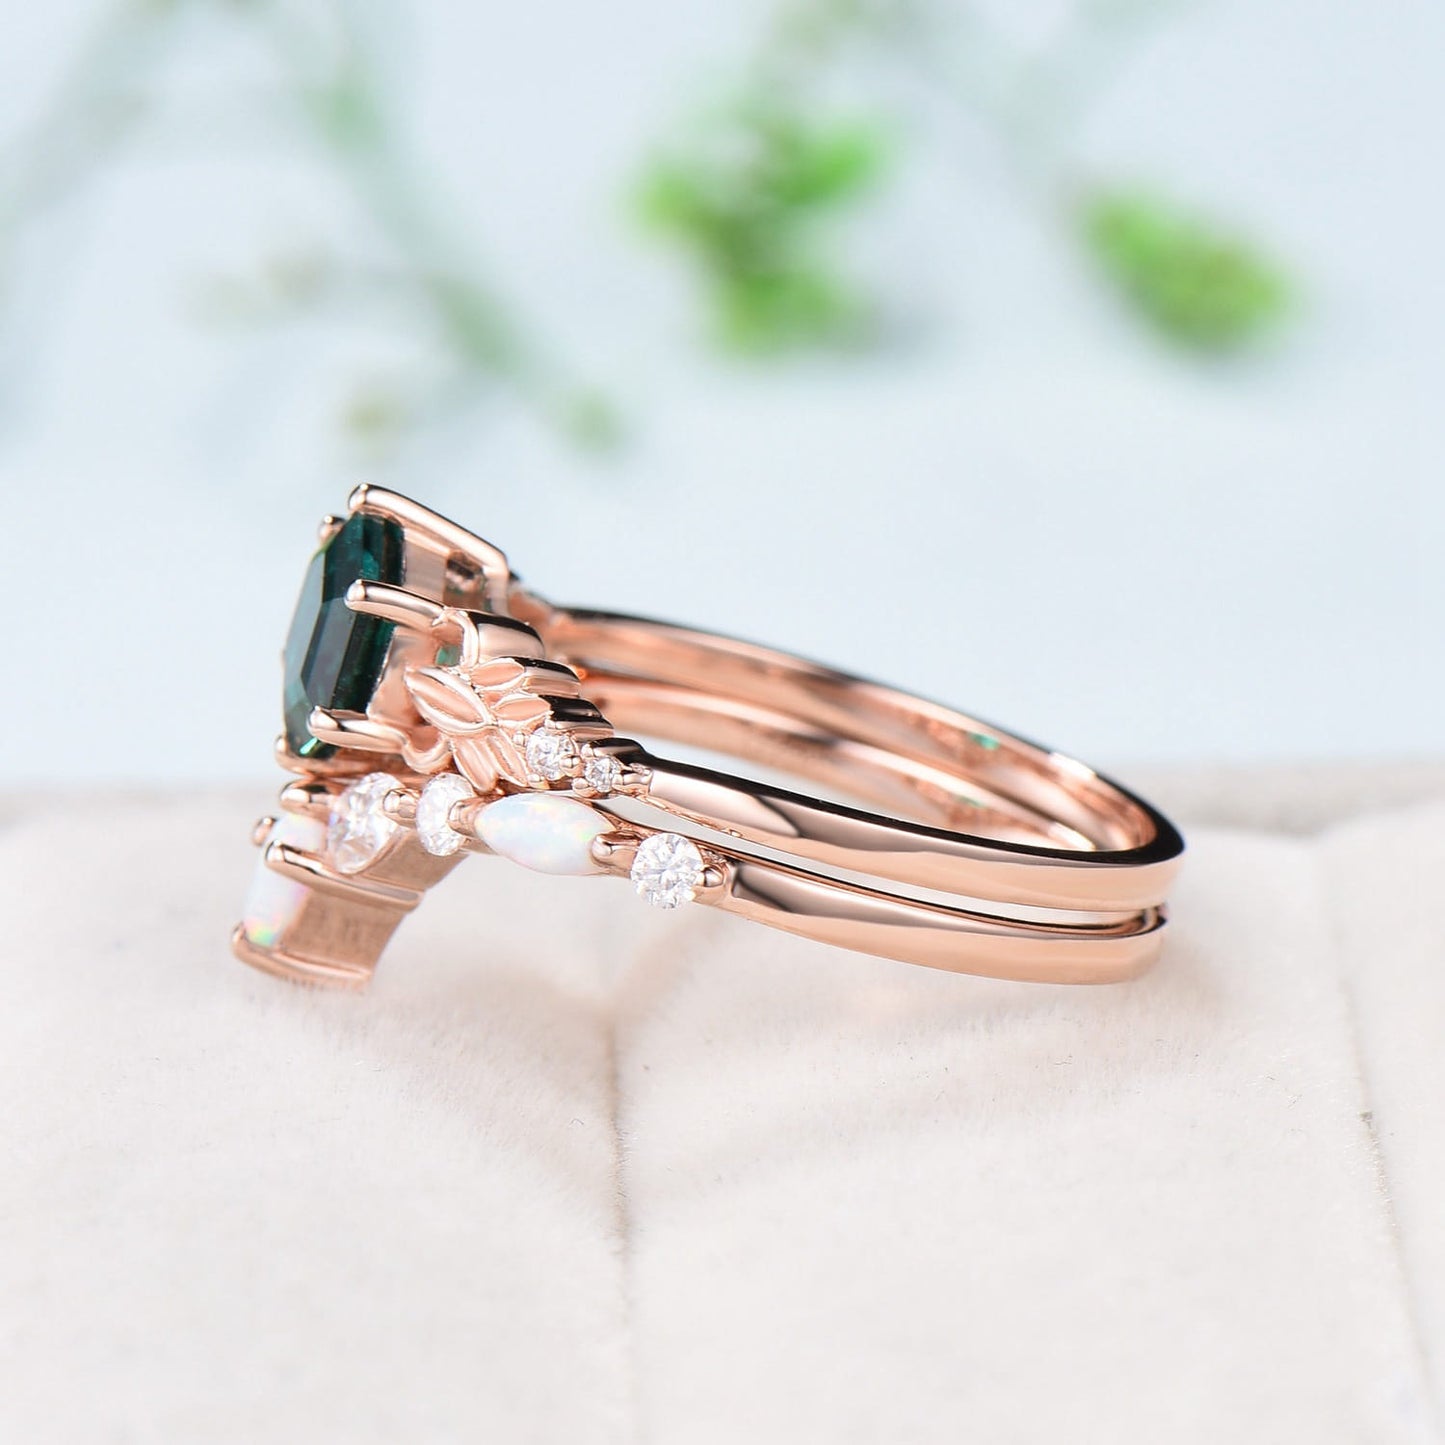 Retro Emerald Engagement Ring Set Vintage Green Crystal Leaf Floral Fire Opal Wedding Ring Art Deco Leaves Flower Bridal Set For Women - PENFINE